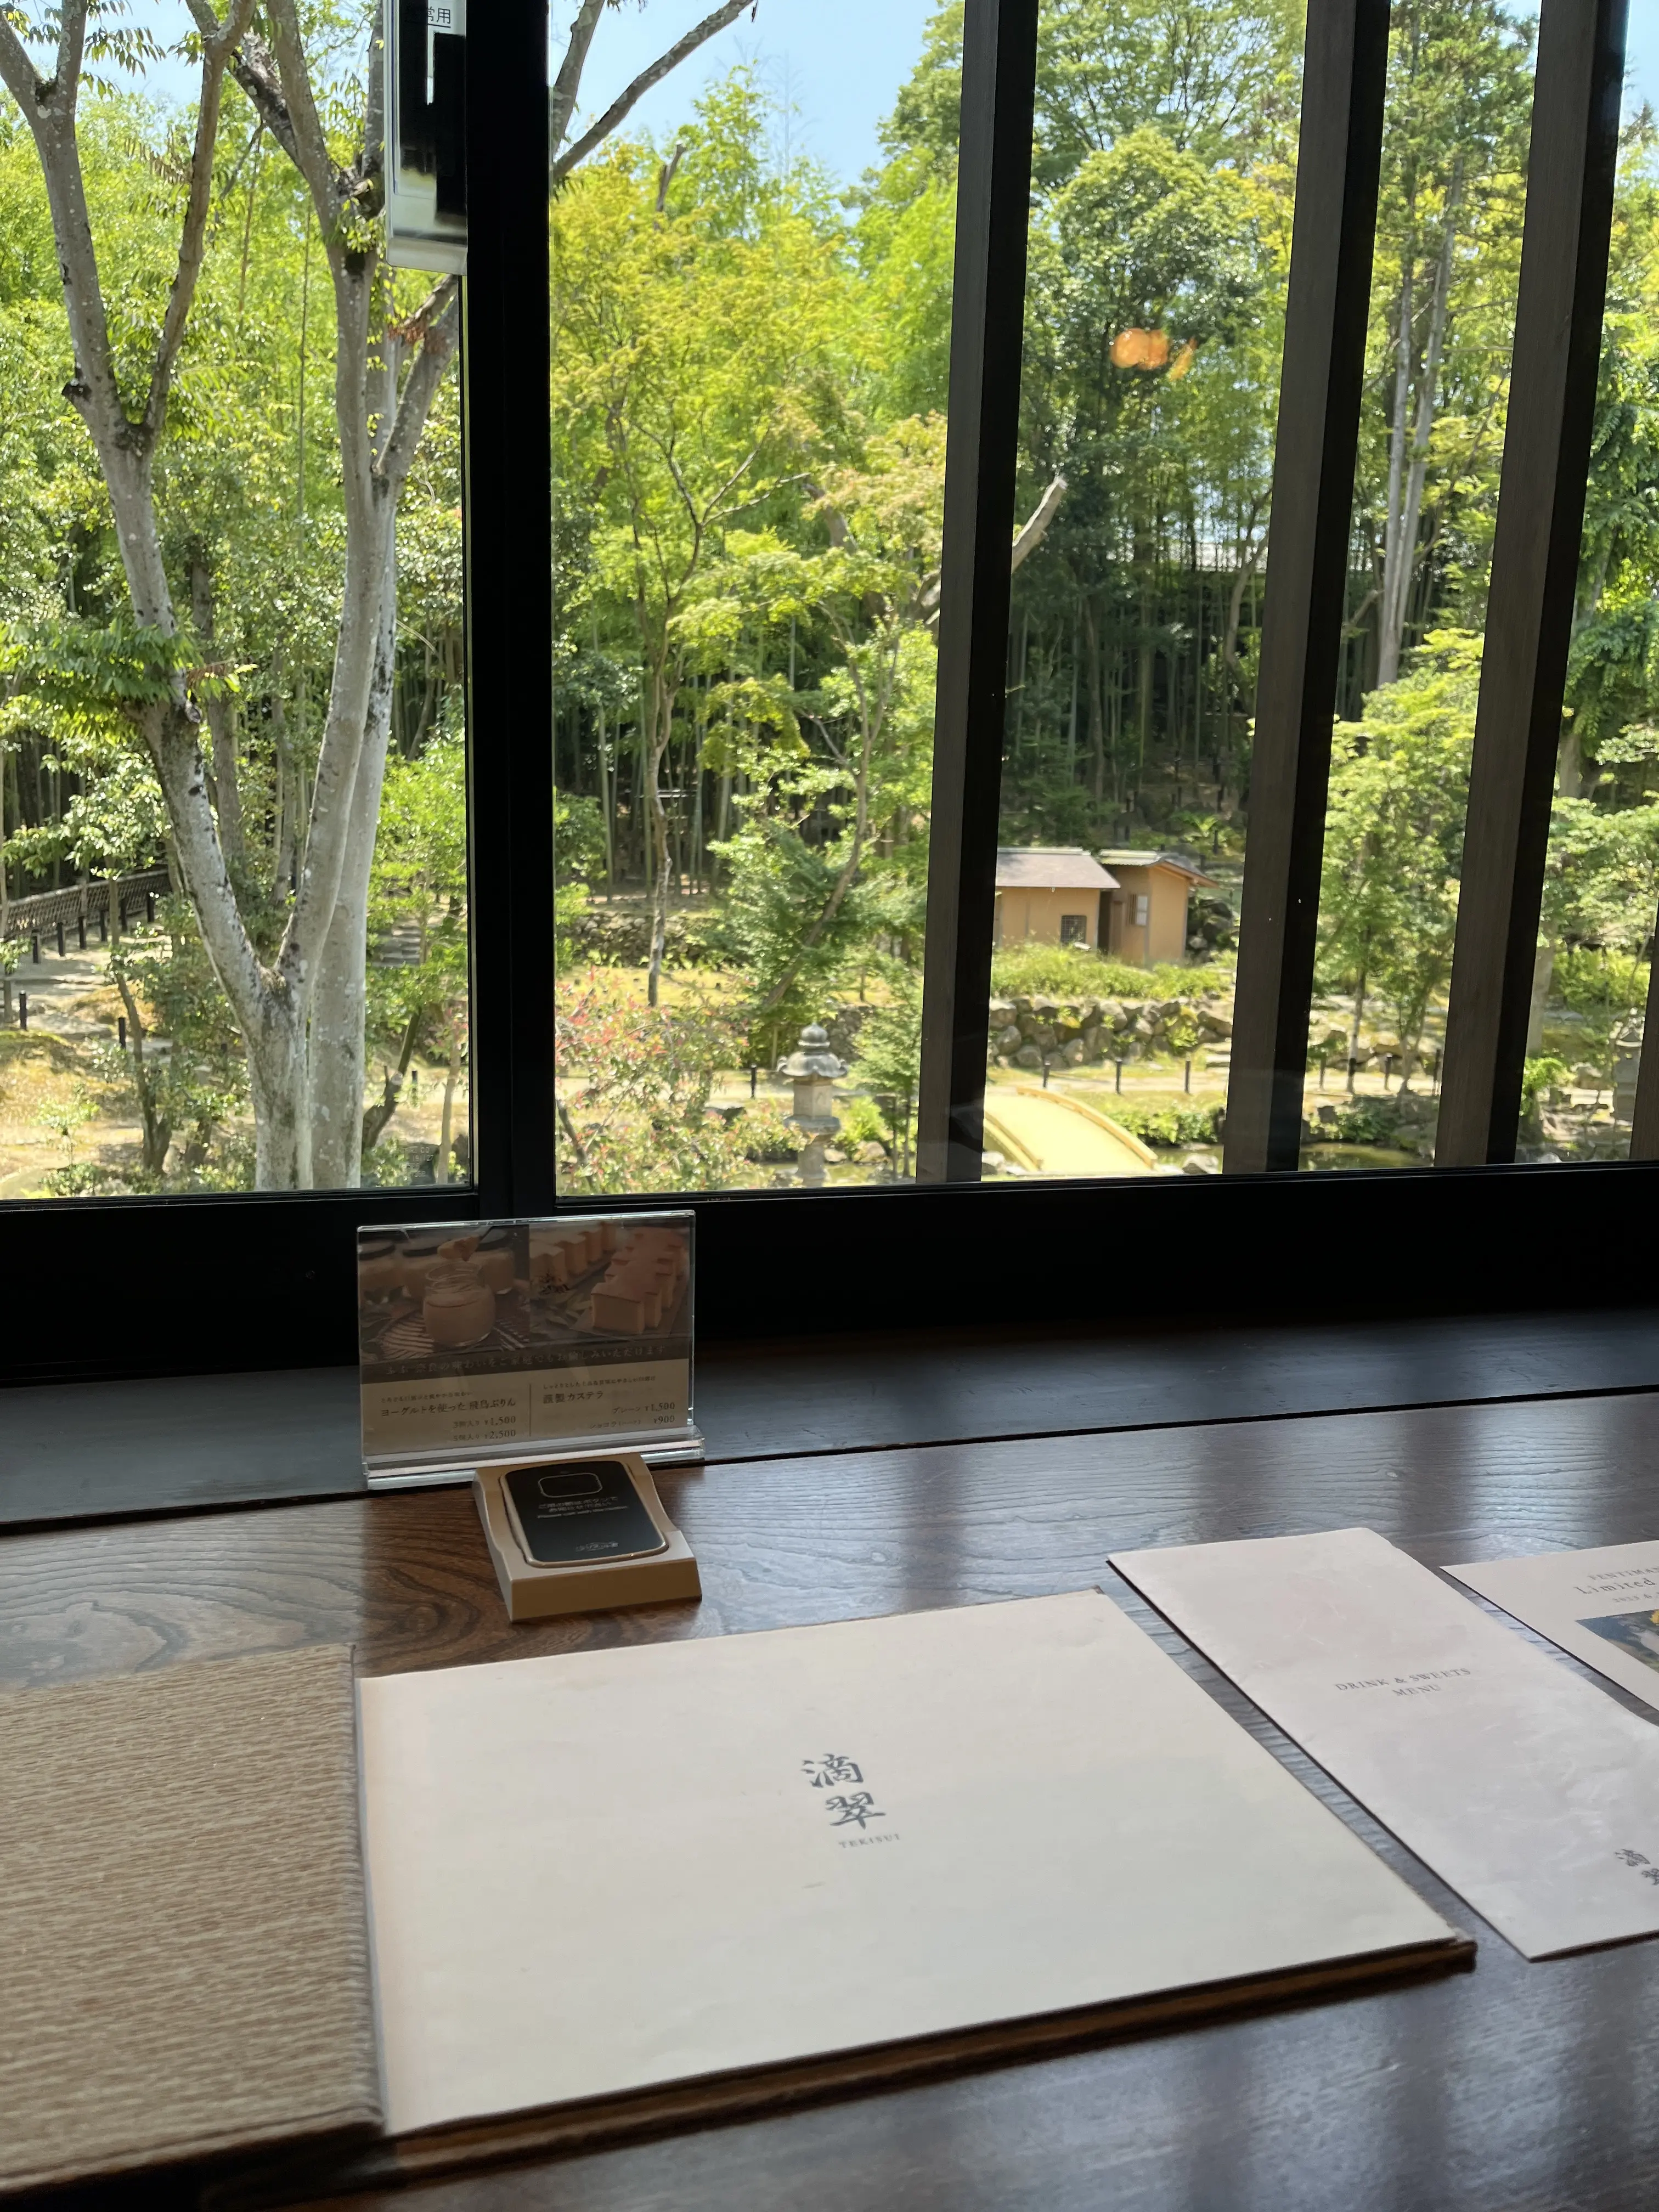 ふふ奈良で緑を愛でながらランチ。_1_2-1